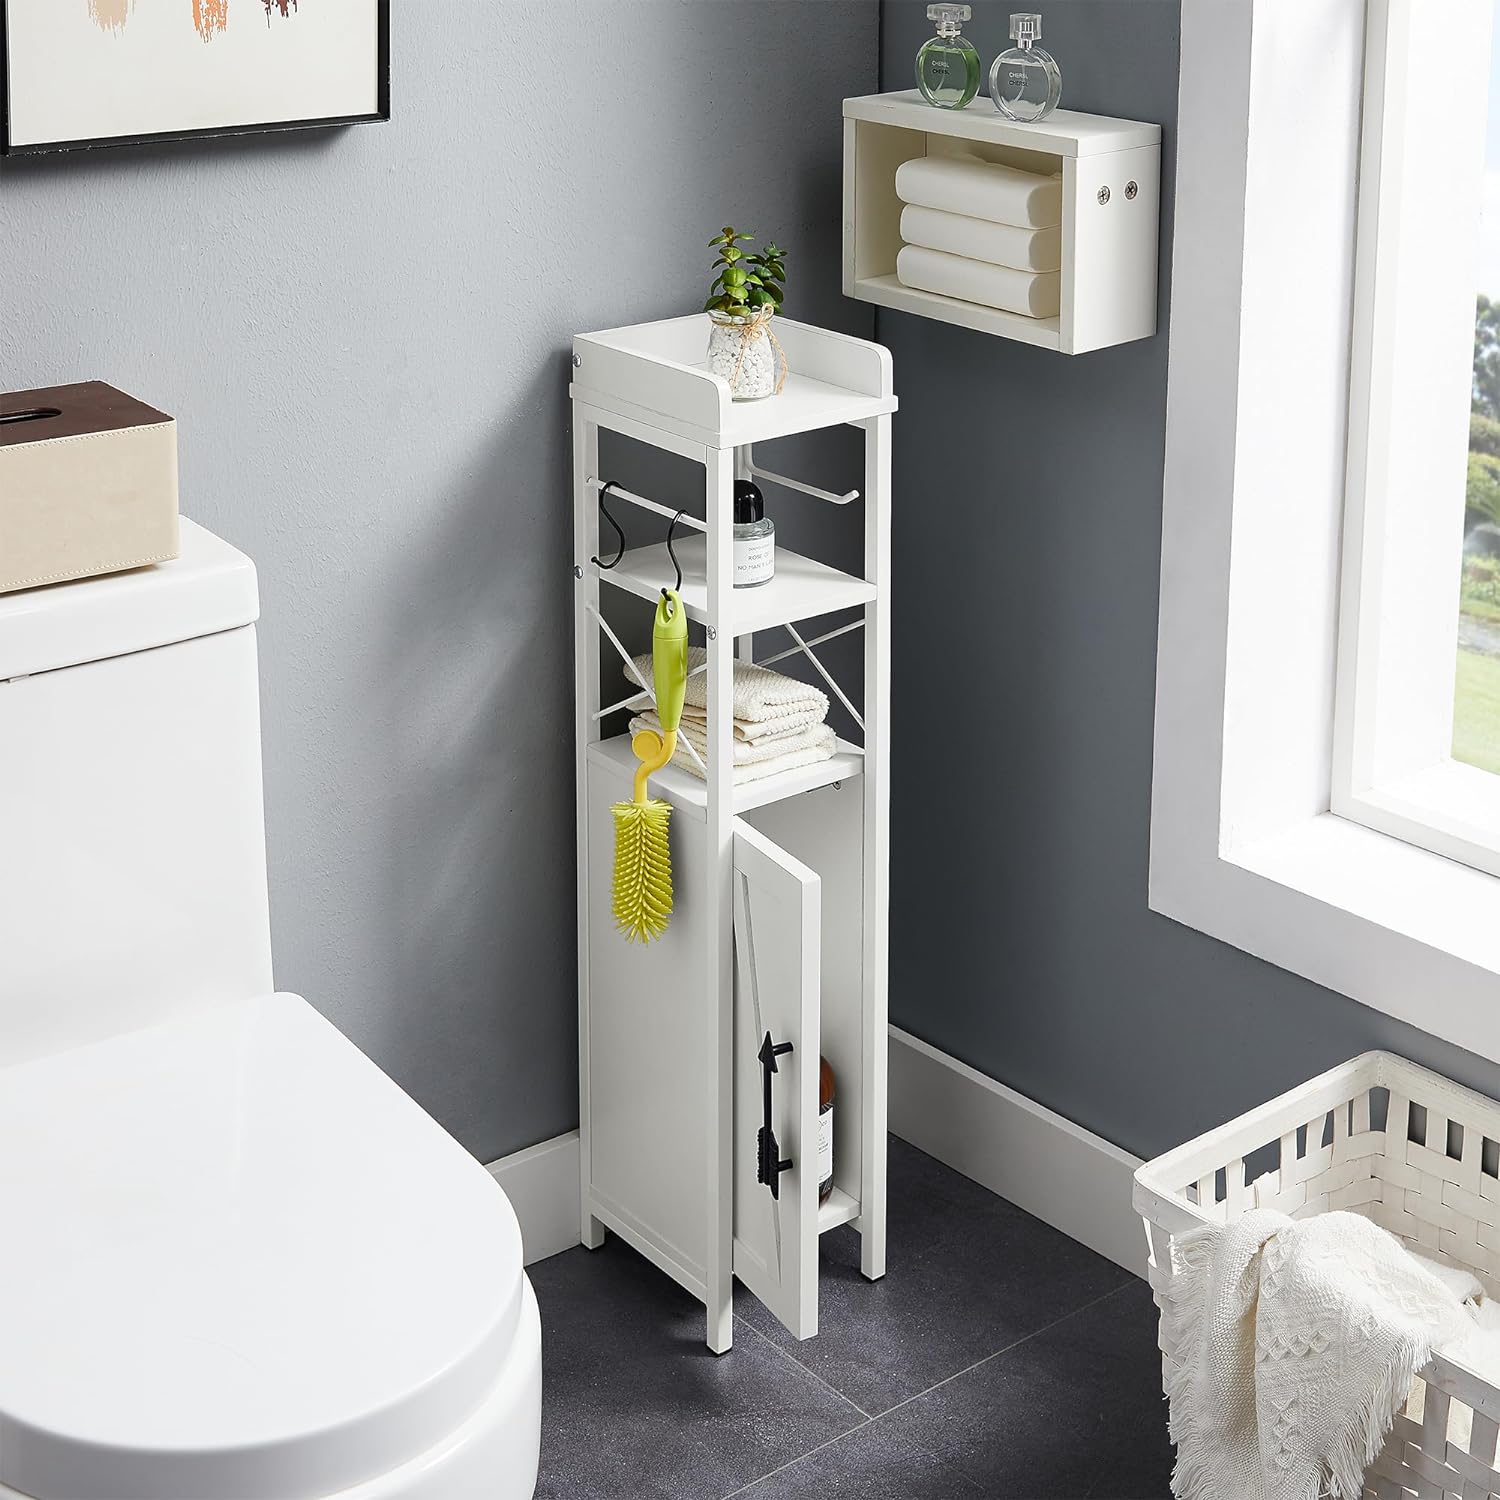 VECELO Small Bathroom Cabinet, Slim Toilet Paper Holder with Door & 2 Shelves